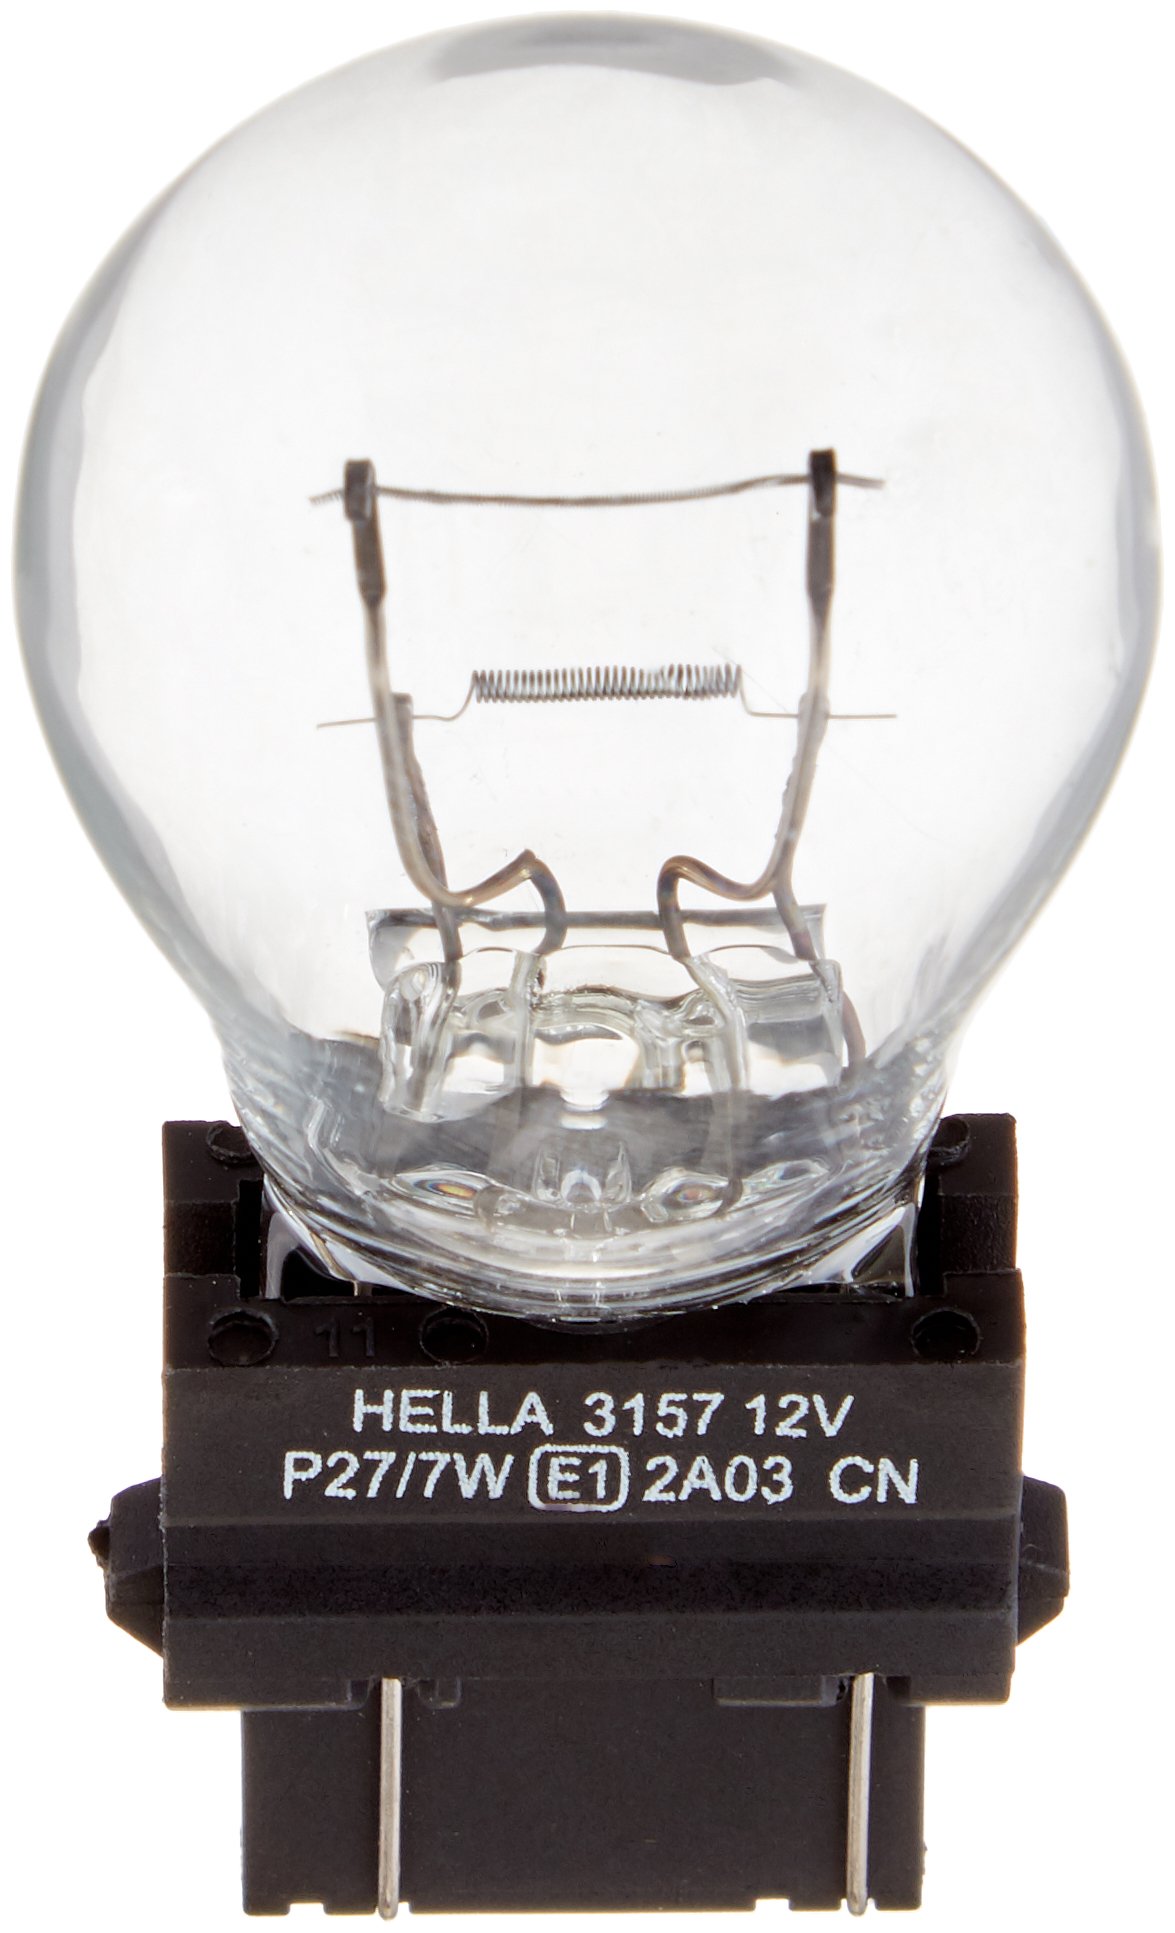 HELLA 3157 TB Doppelblister Standard Miniatur 3157 Glühbirnen, 12 V, 27/7 W, 2 Stück von Hella